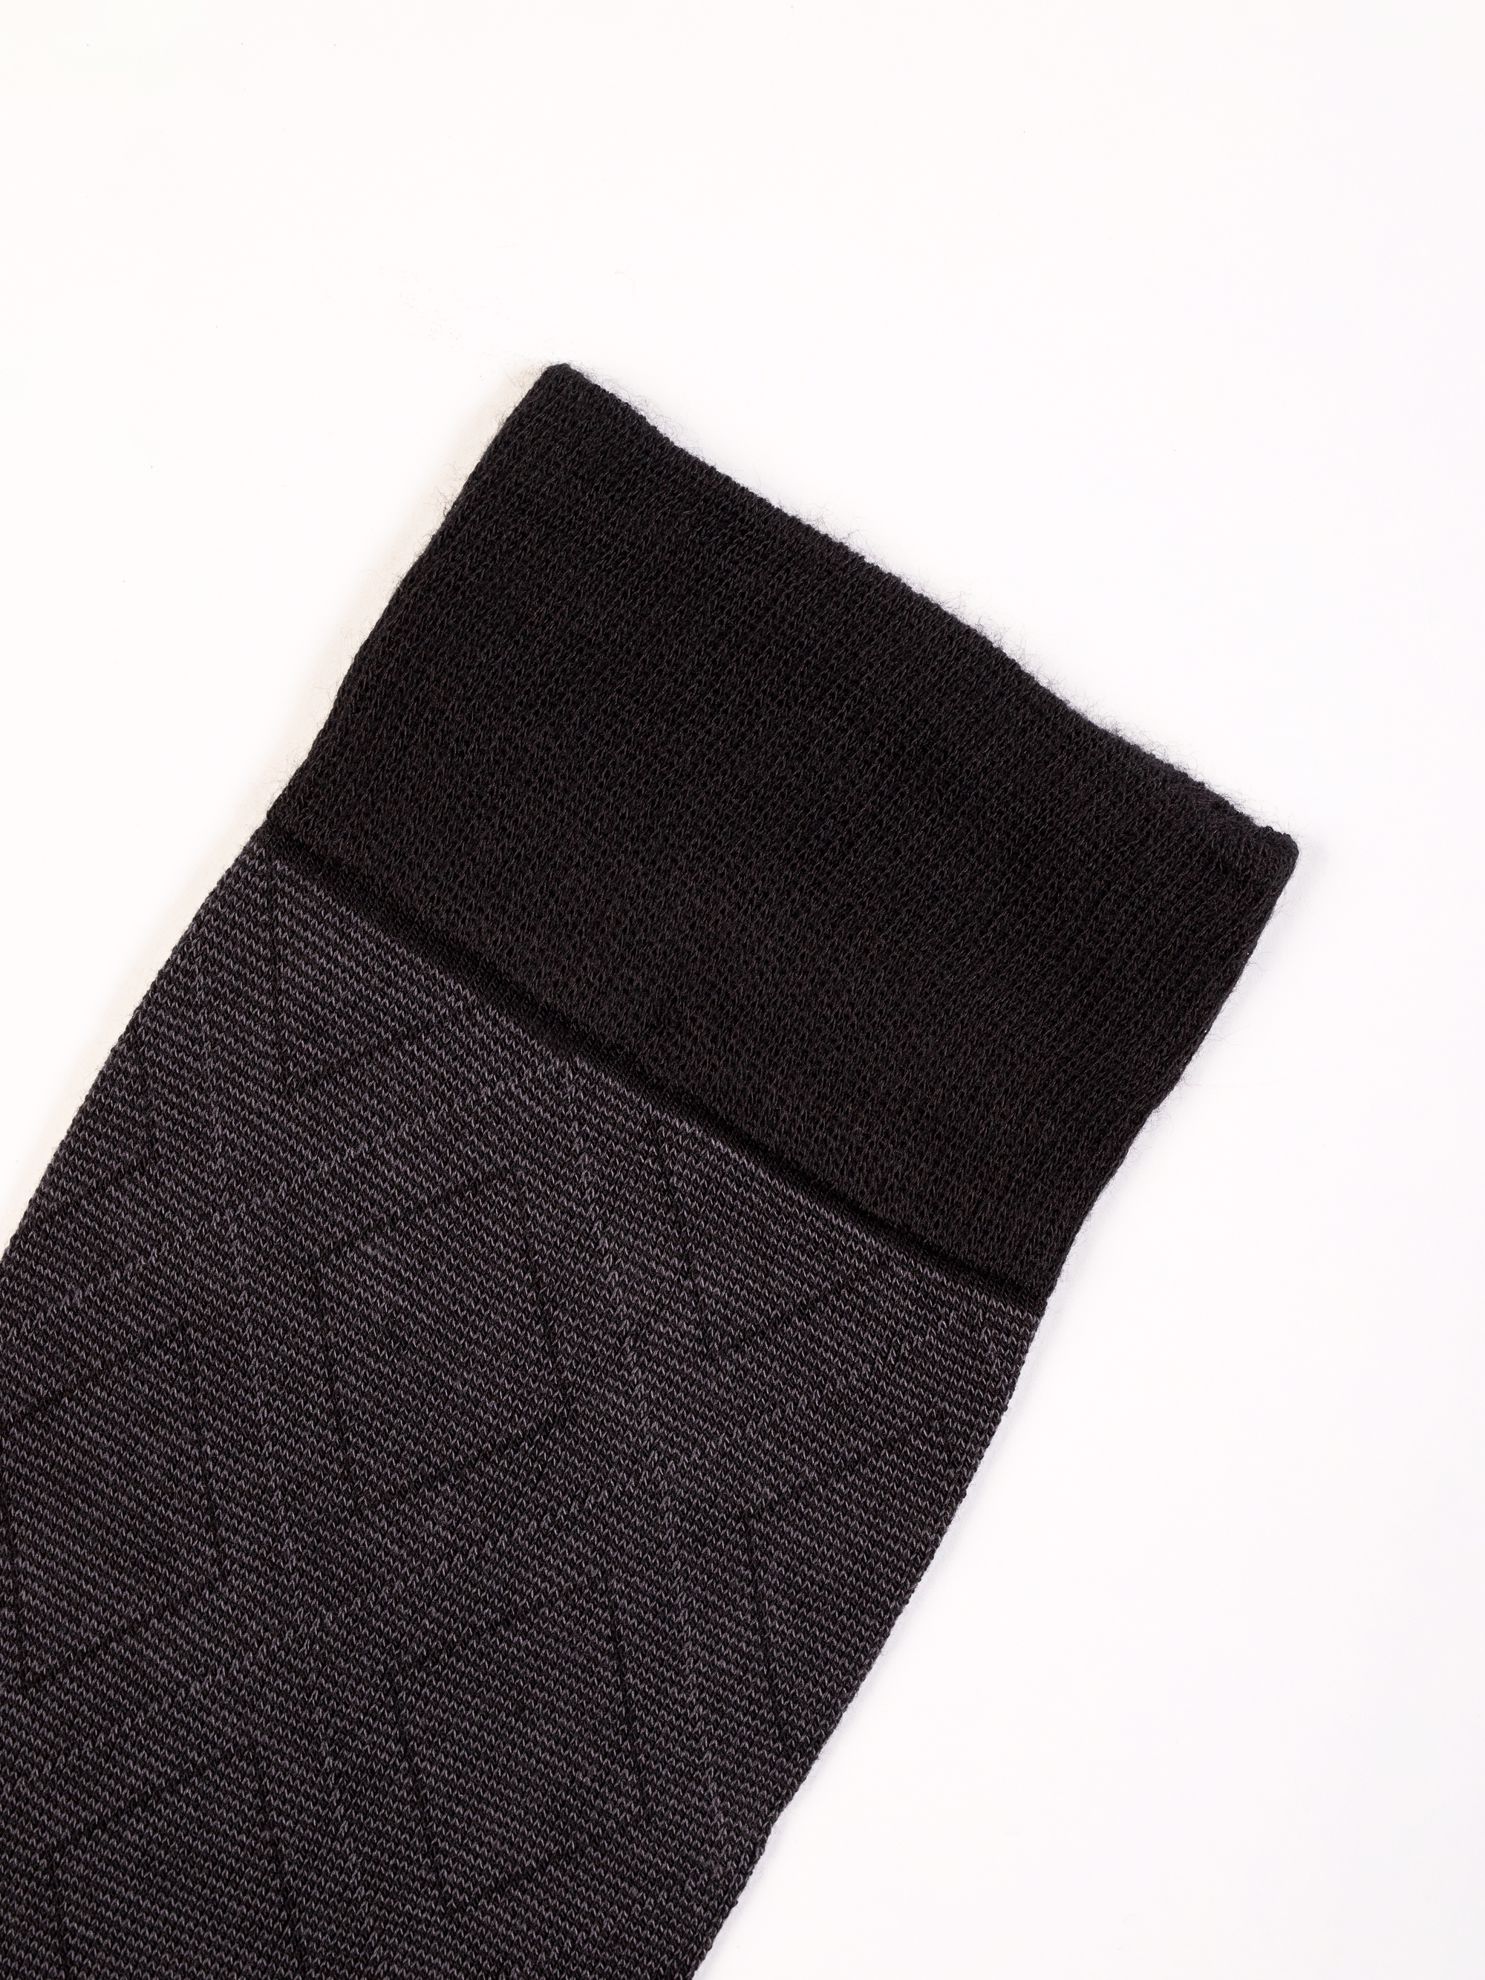 Karaca Erkek Soket Çorap-Siyah. ürün görseli